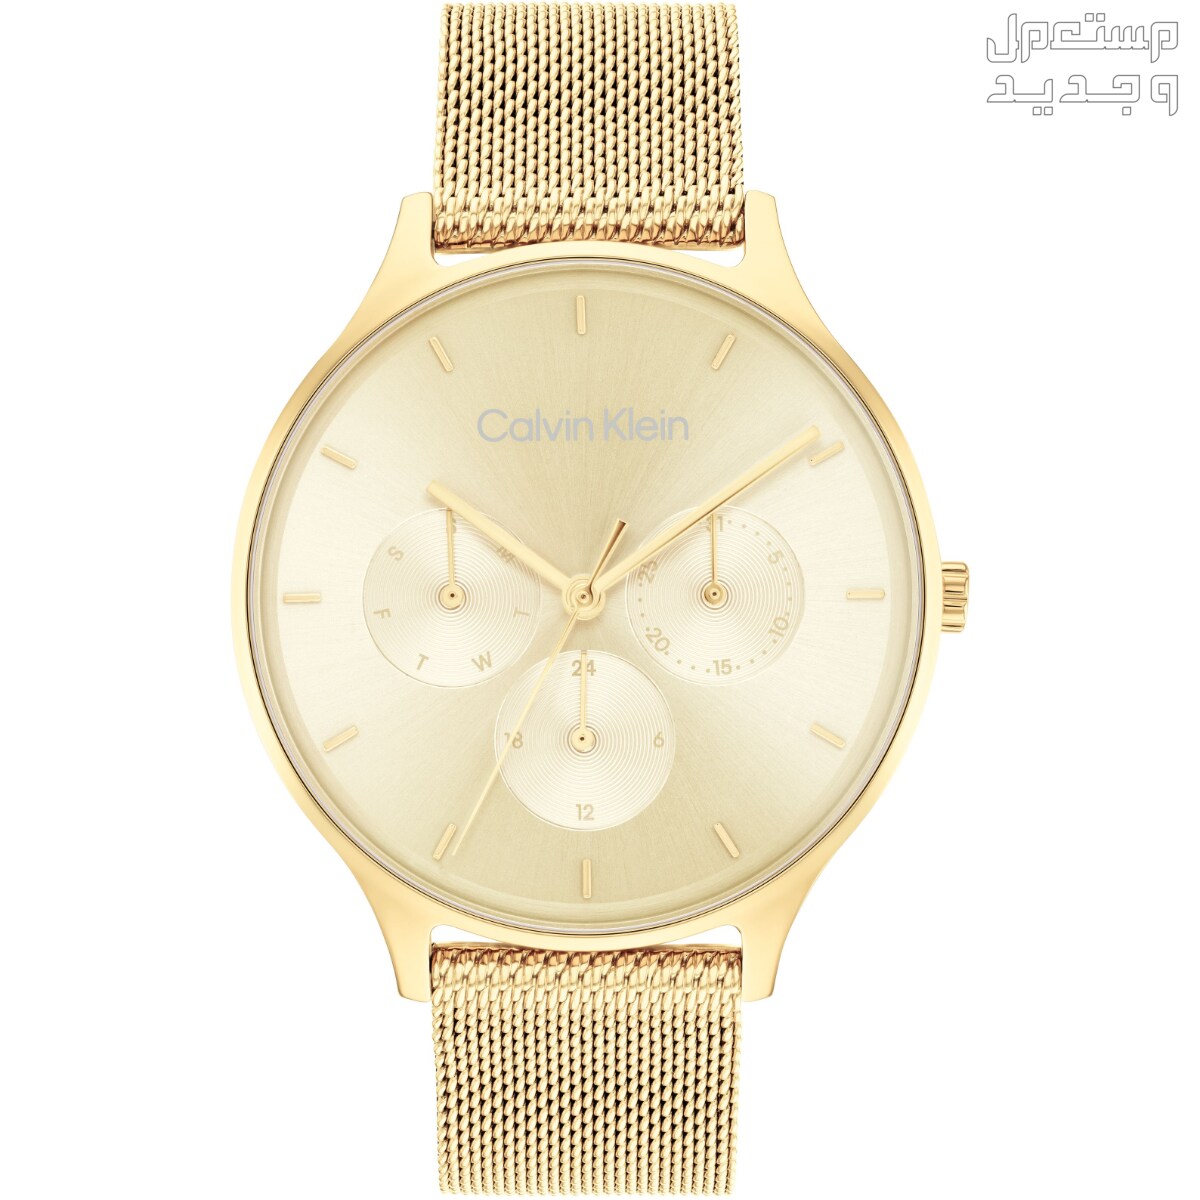 أنواع ساعات يد ذهب نسائية واسعارها في العراق ساعة Calvin Klein Timeless Multifunction Day and Date Gold Steel Watch 25200103